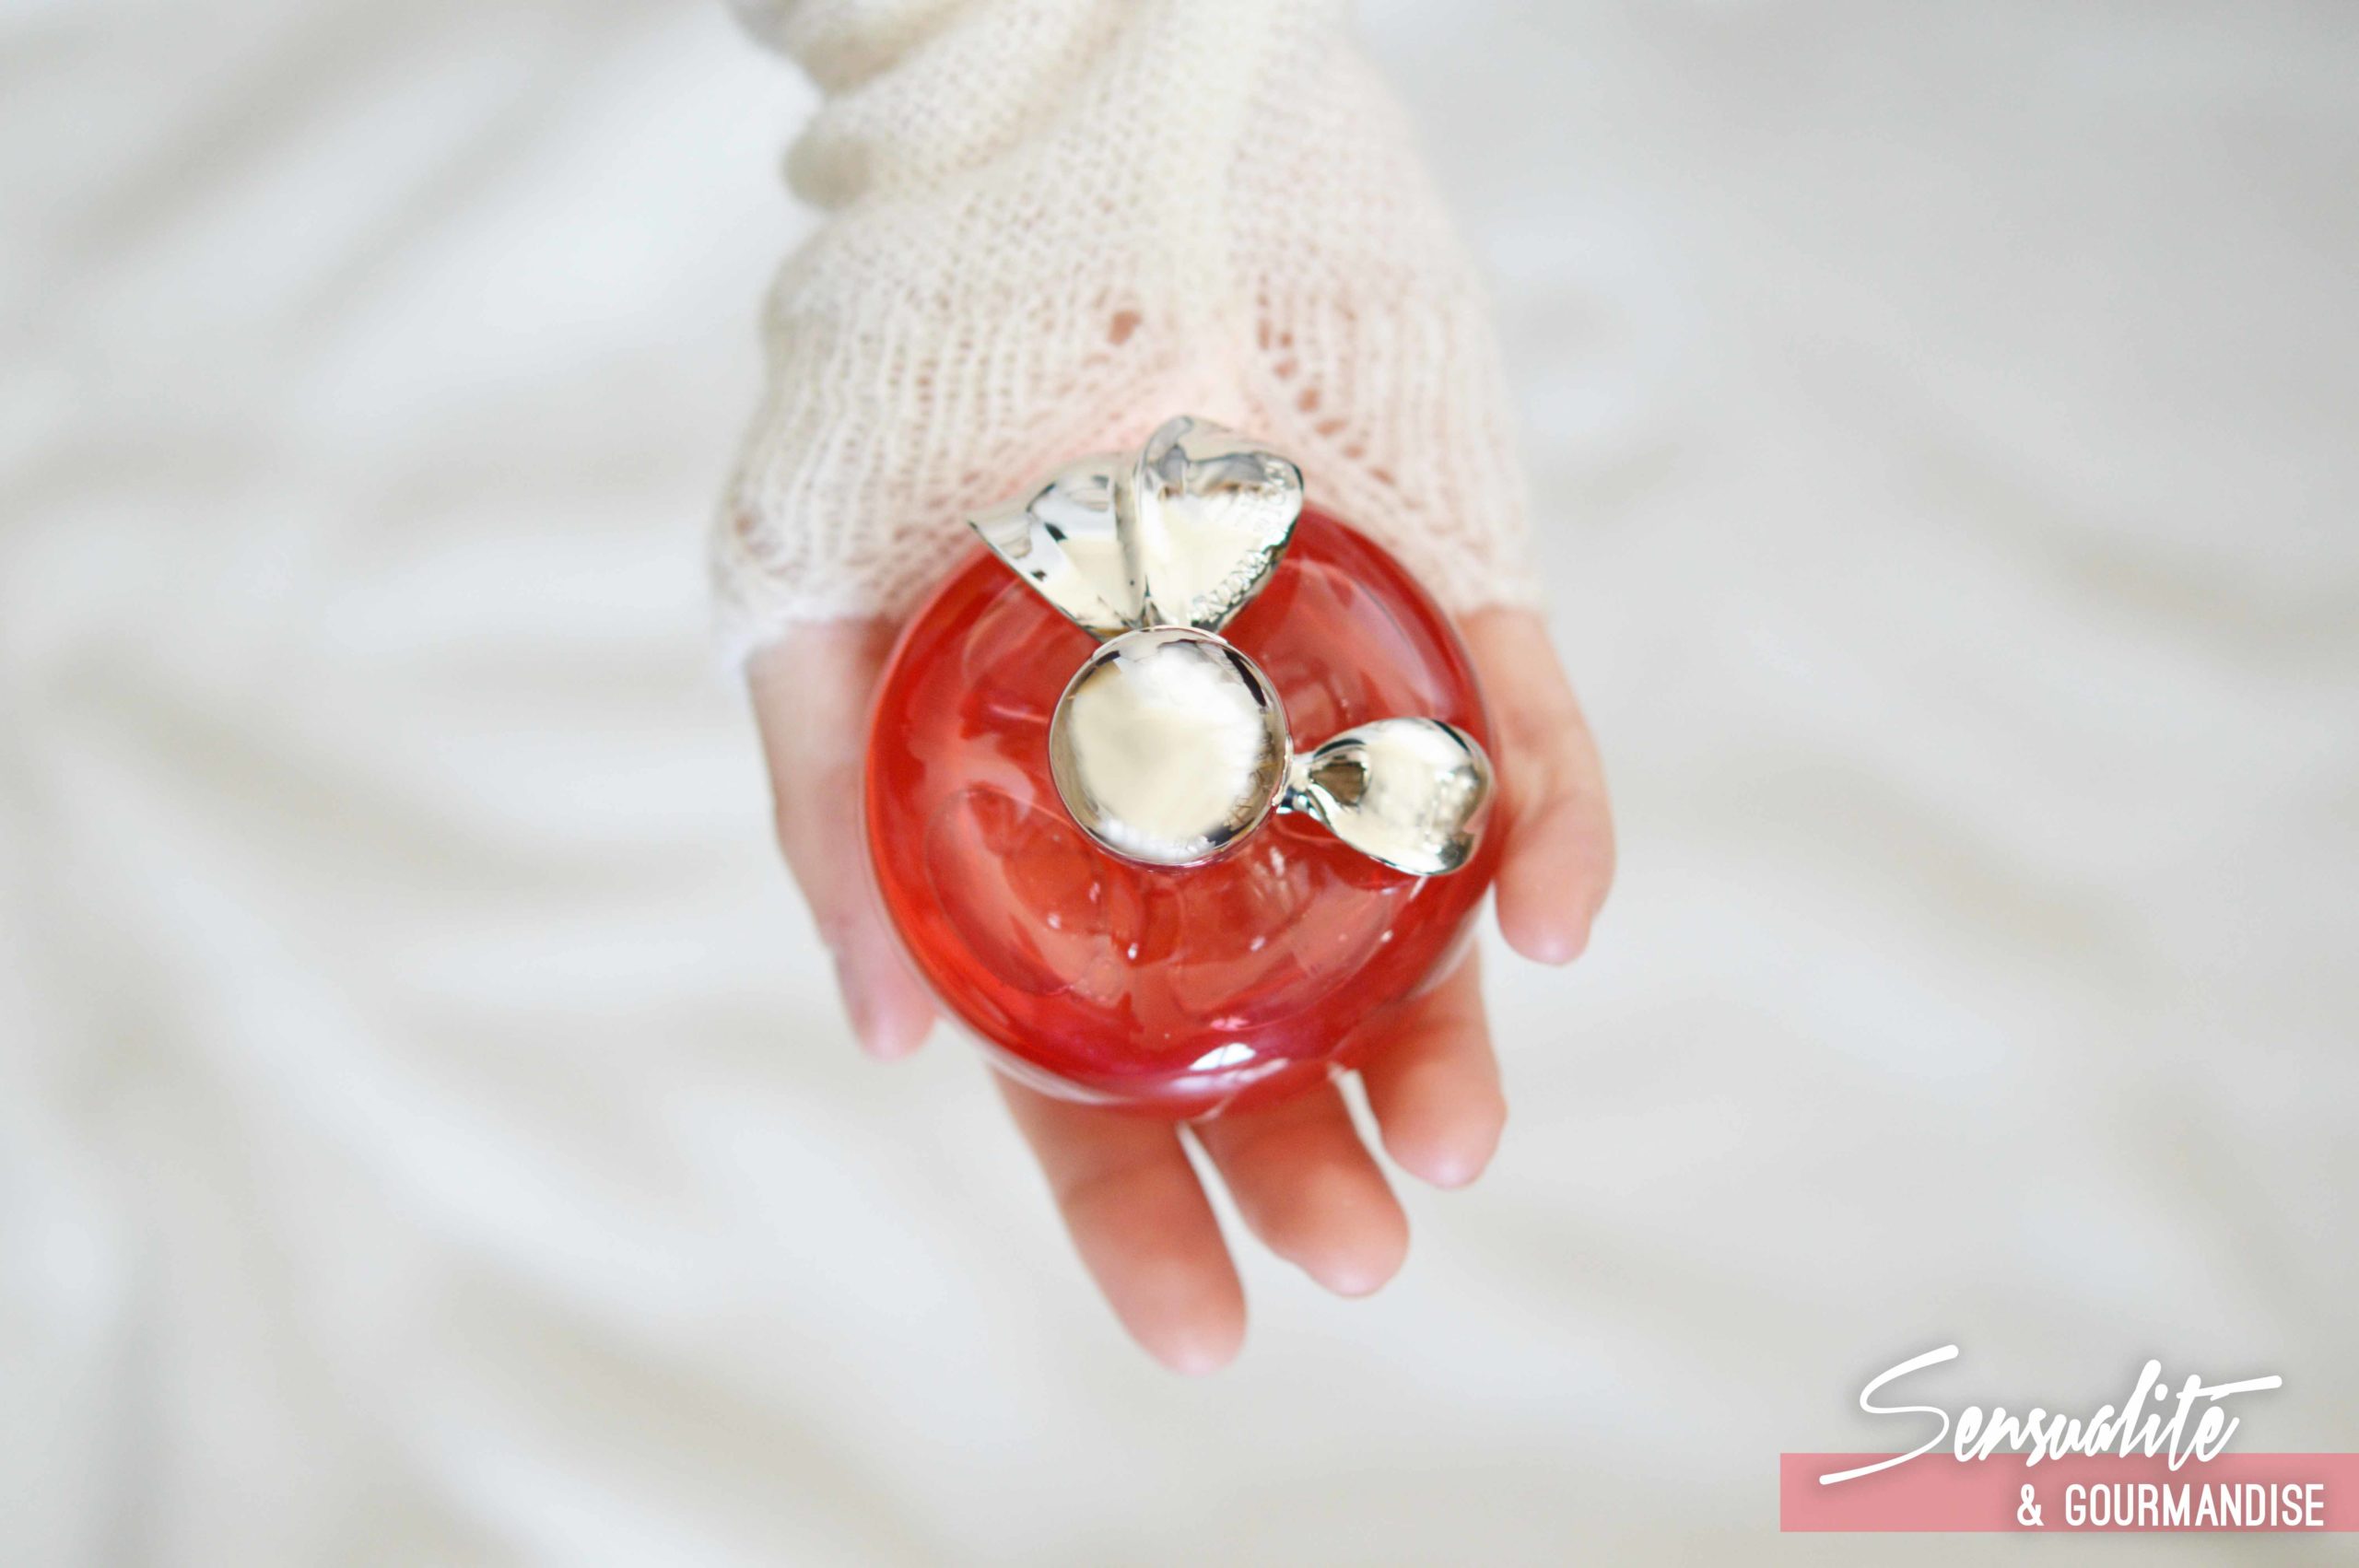 Un classique indémodable, le parfum Nina se présente dans un joli flacon en forme de pomme